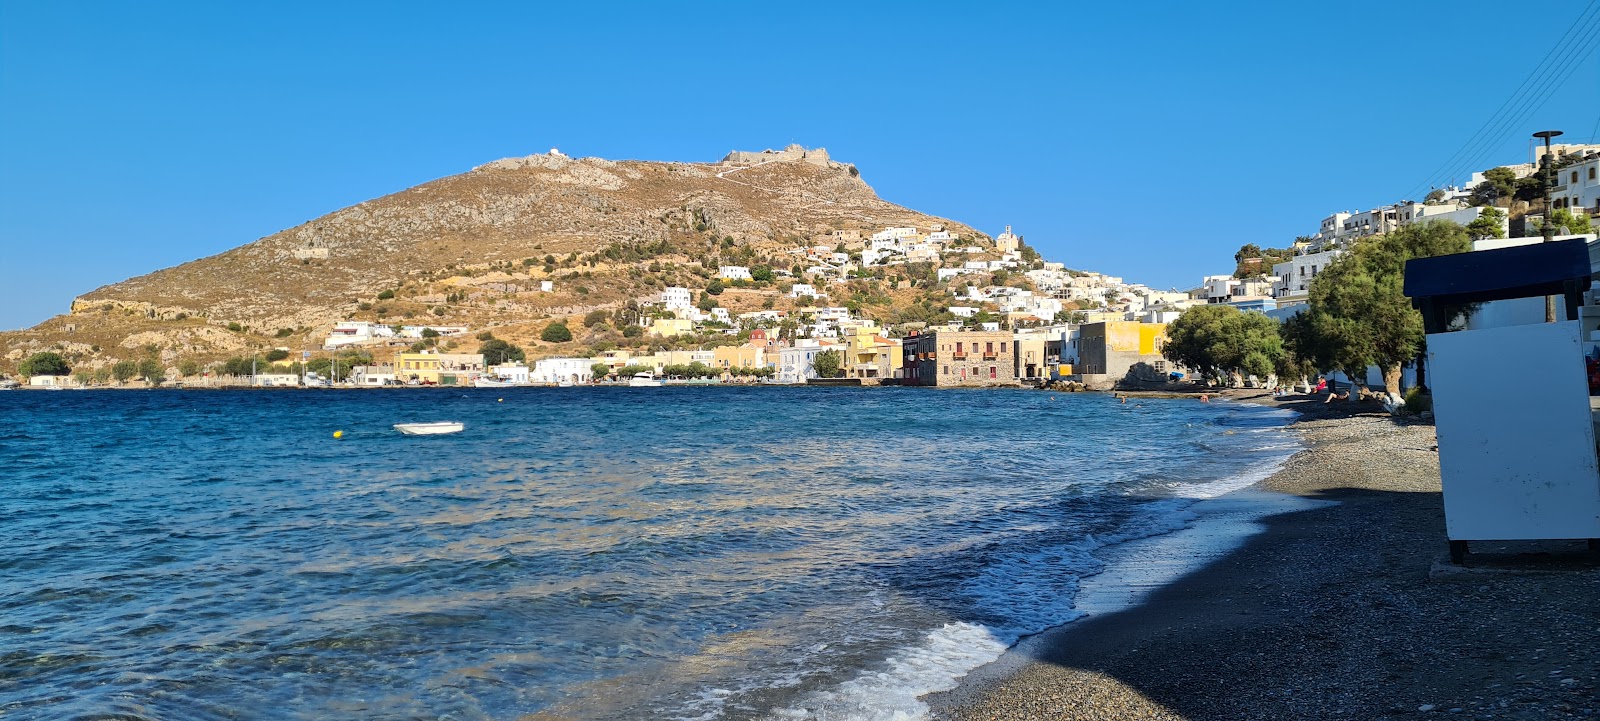 Paralia Agias Marinas'in fotoğrafı gri ince çakıl taş yüzey ile